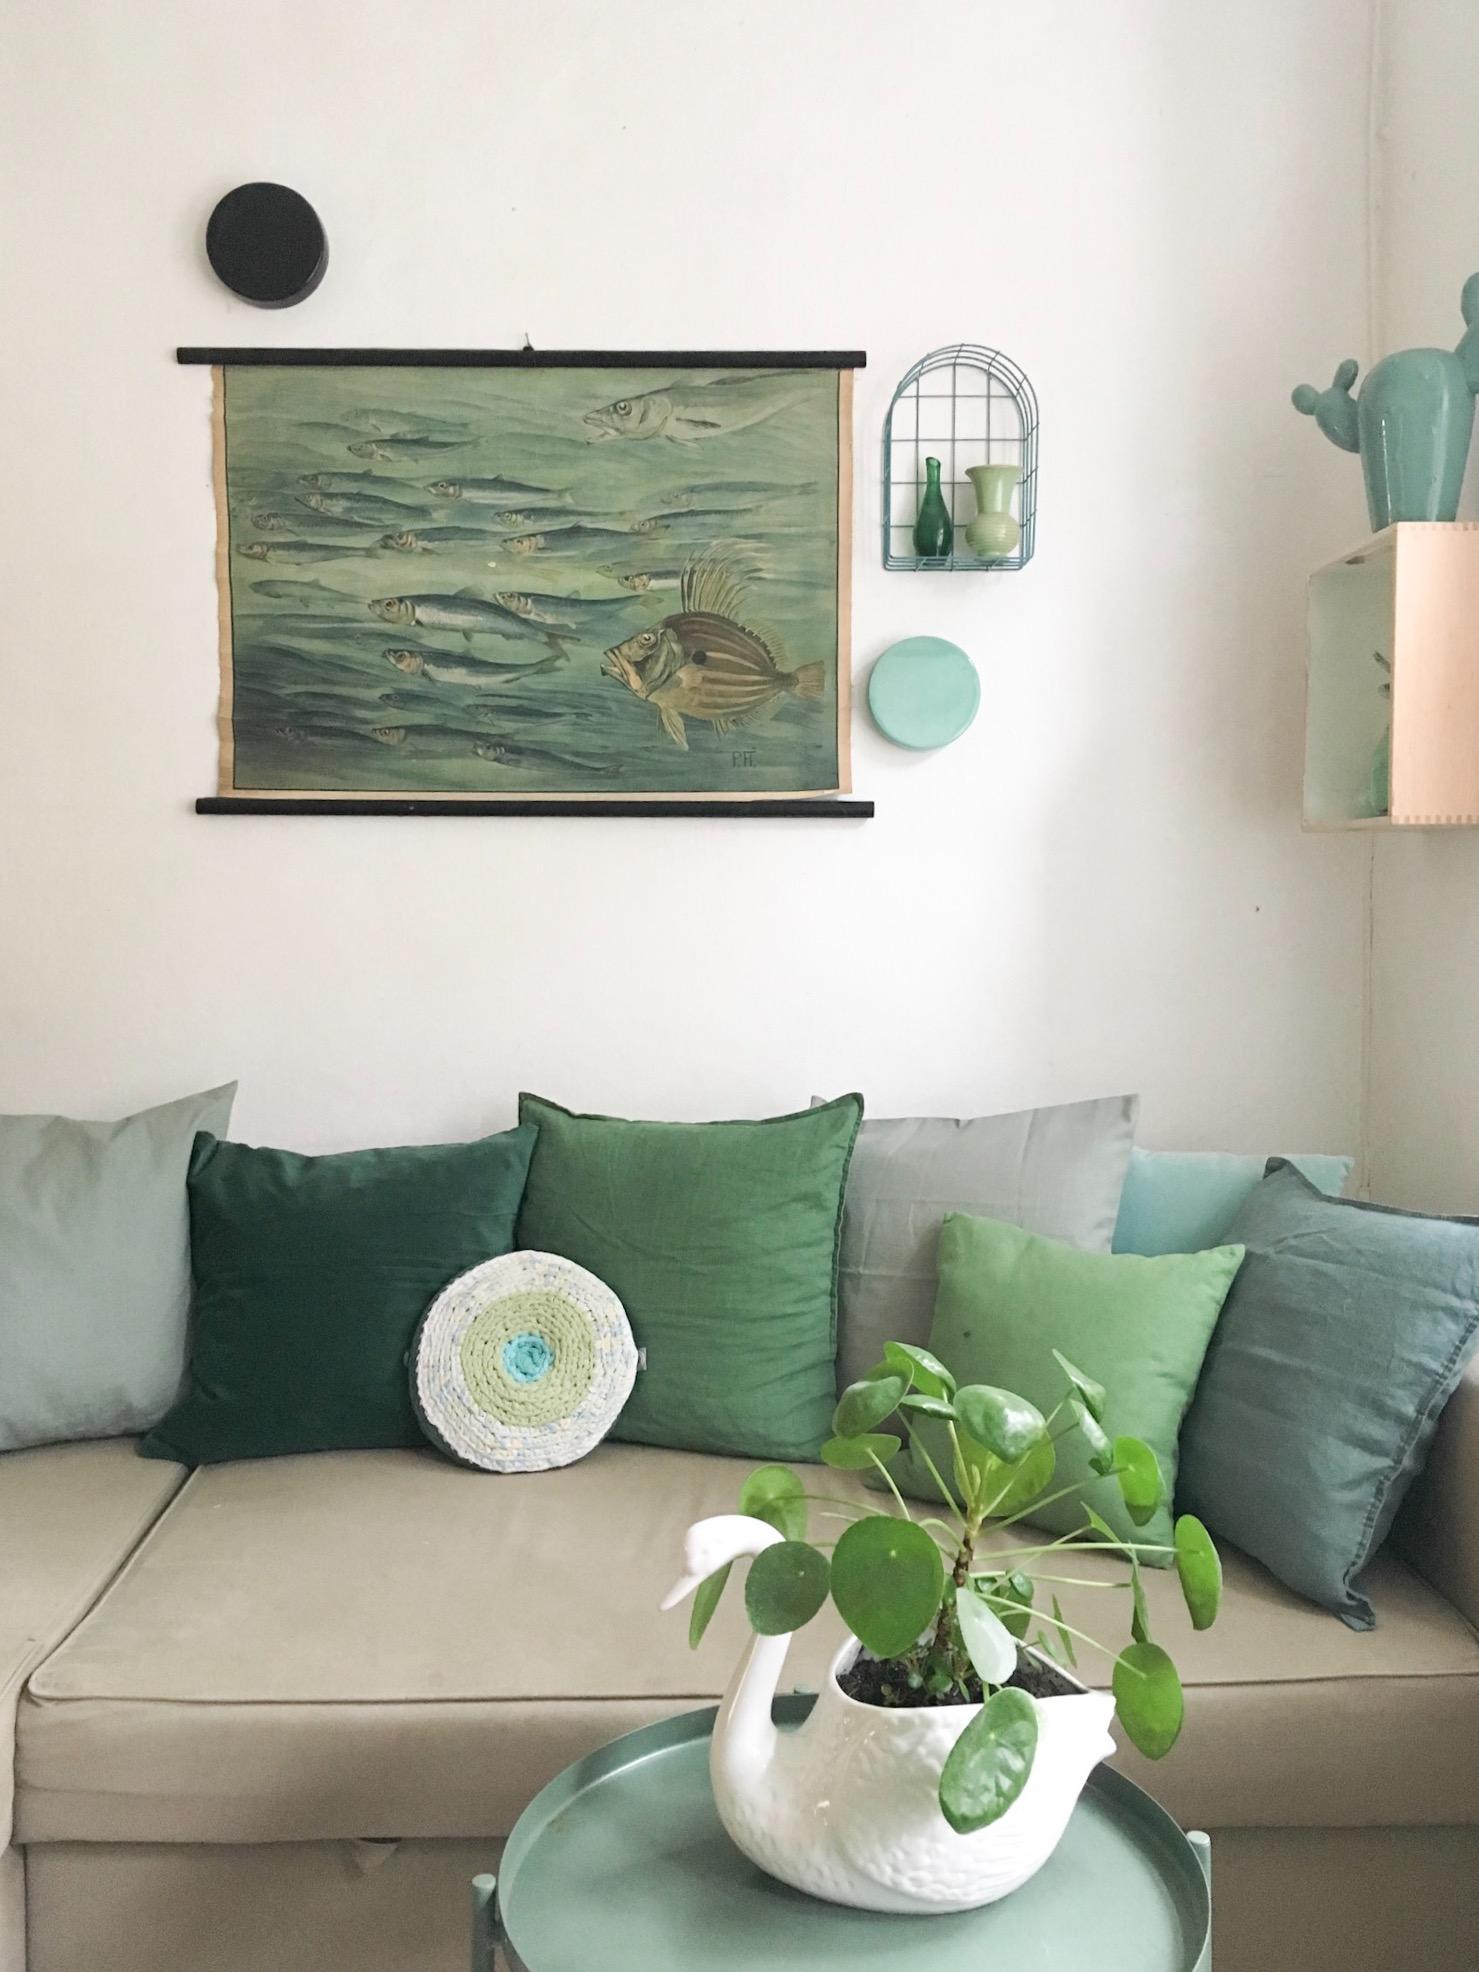 Grün ist und bleibt meine Lieblingsfarbe 💚🌱 #wohnzimmer #deko #couch #sofa #kissenliebe